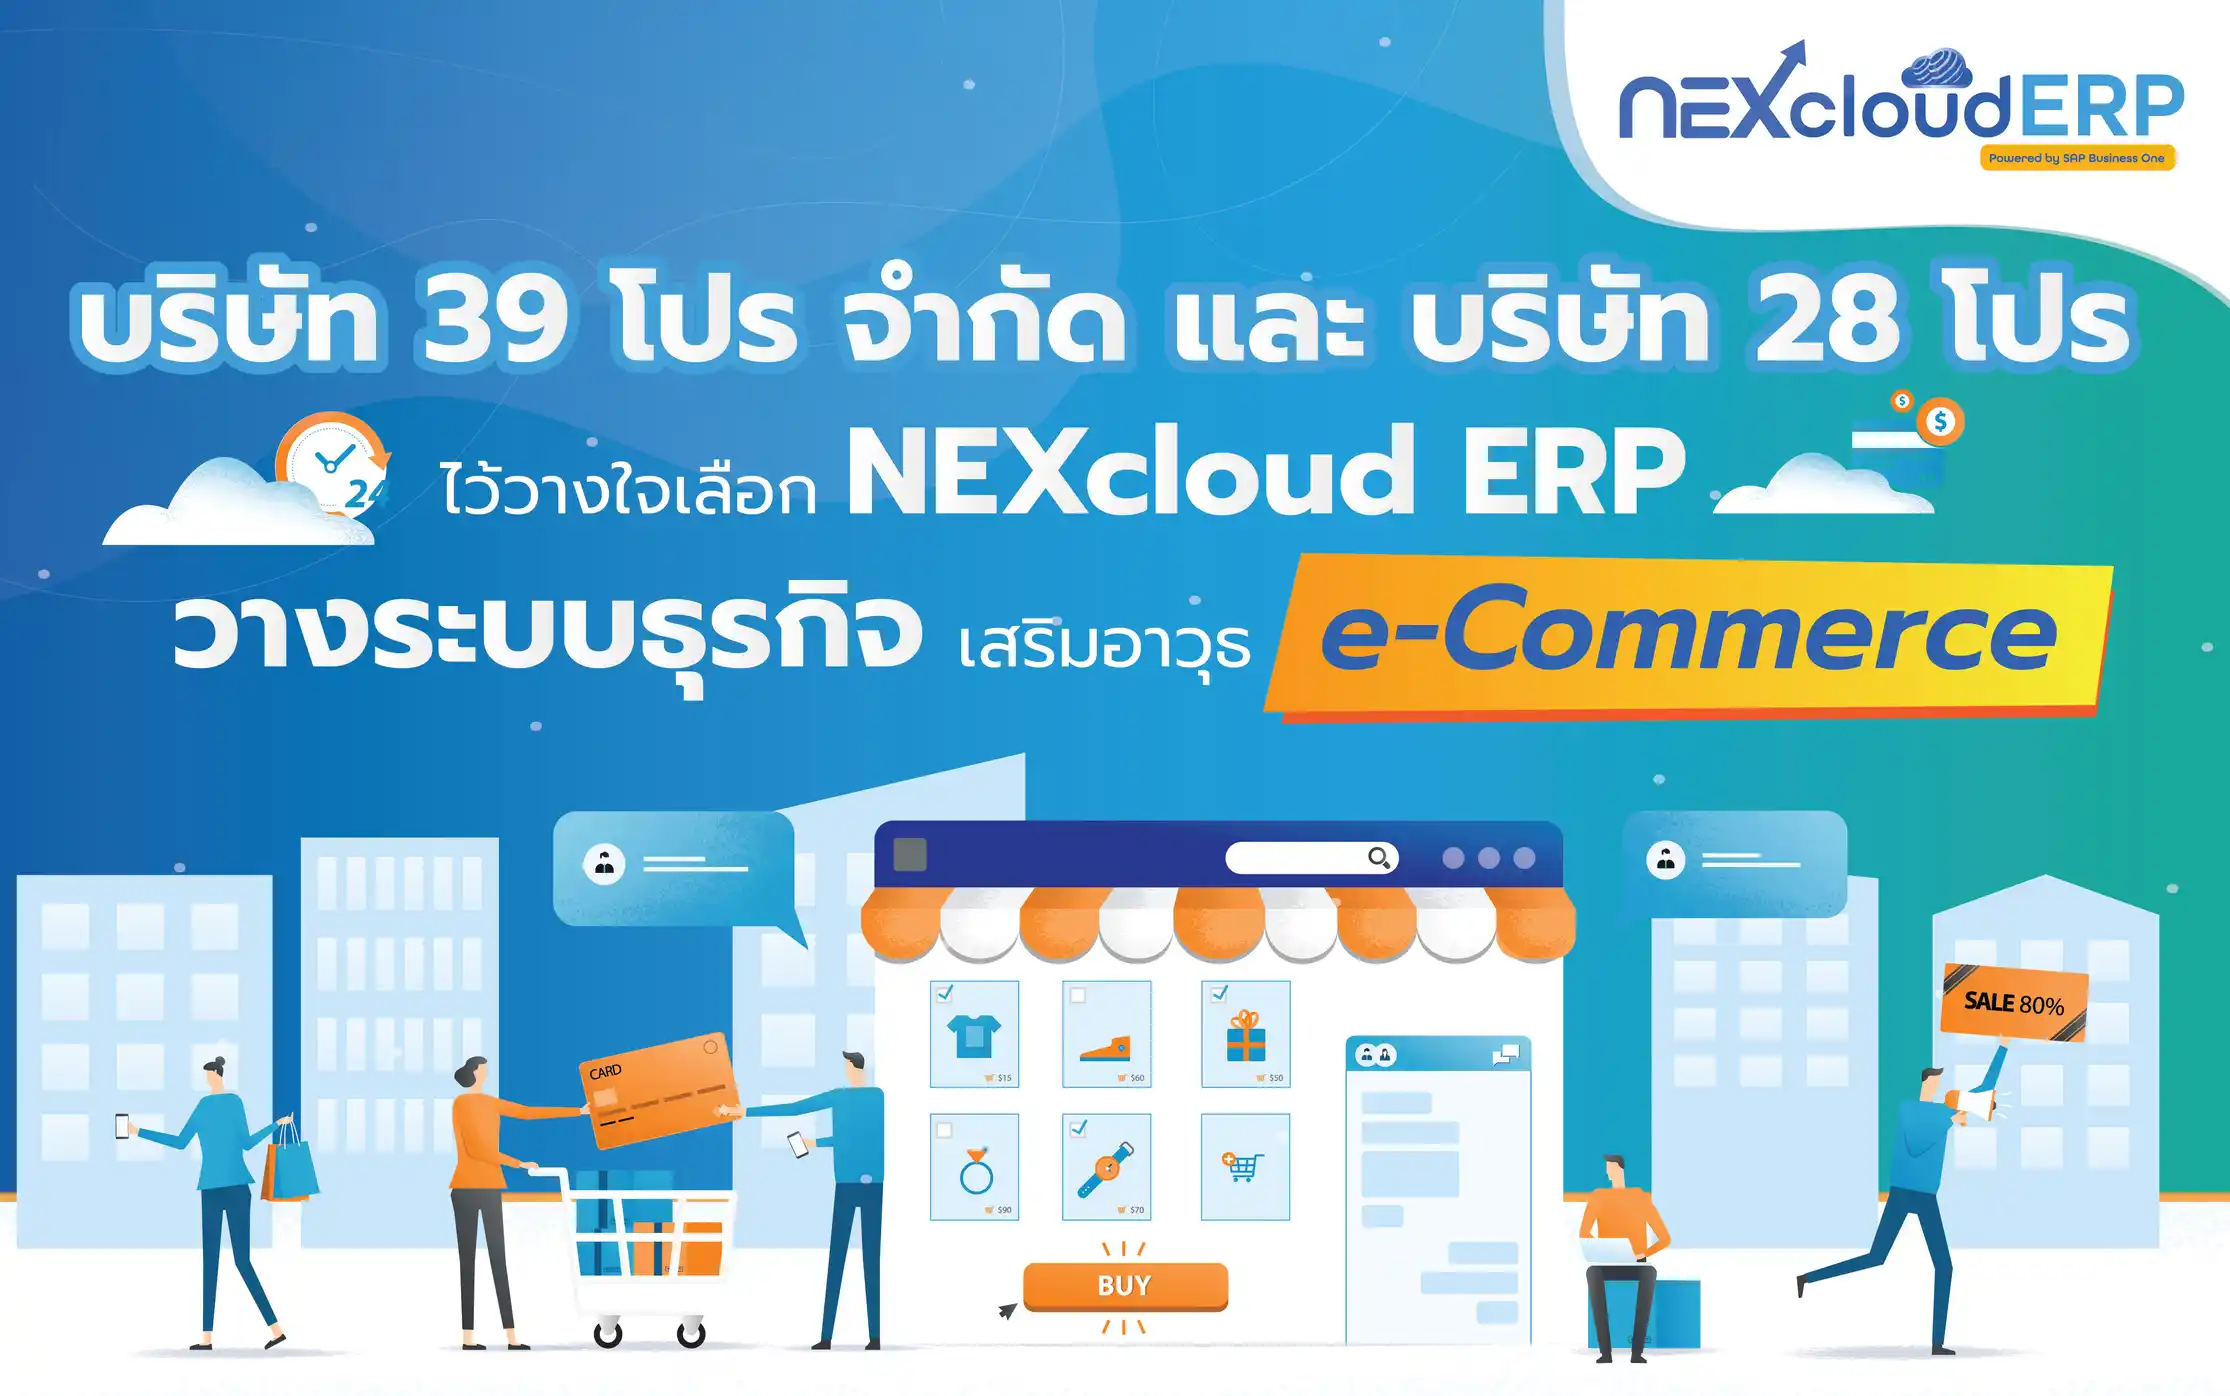 บริษัท 39 โปร และบริษัท 28 โปร วางใจเลือก NEXcloud ERP วางระบบธุรกิจ เสริมอาวุธ e-Commerce